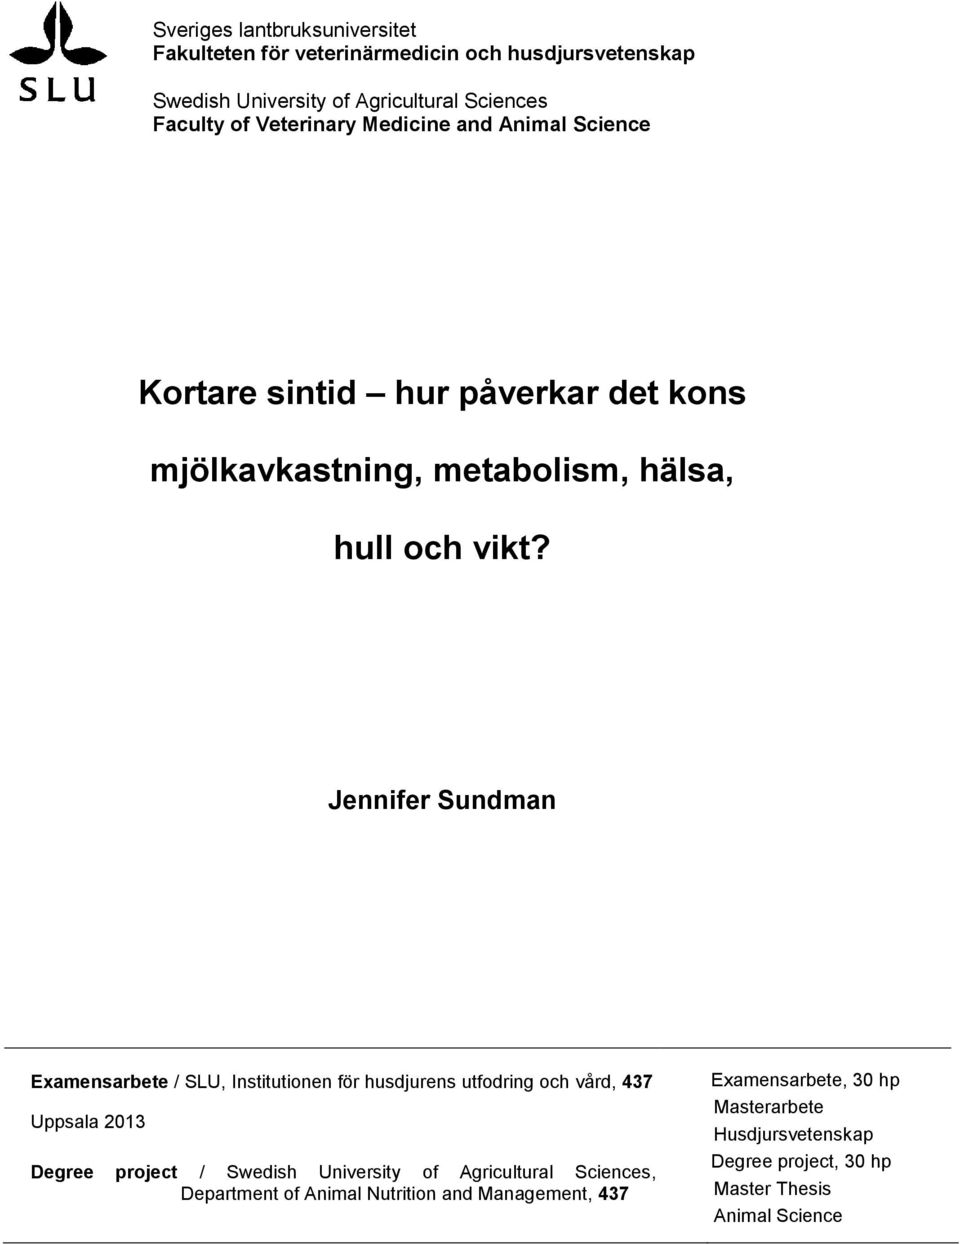 Jennifer Sundman Examensarbete / SLU, Institutionen för husdjurens utfodring och vård, 437 Uppsala 2013 Degree project / Swedish University of